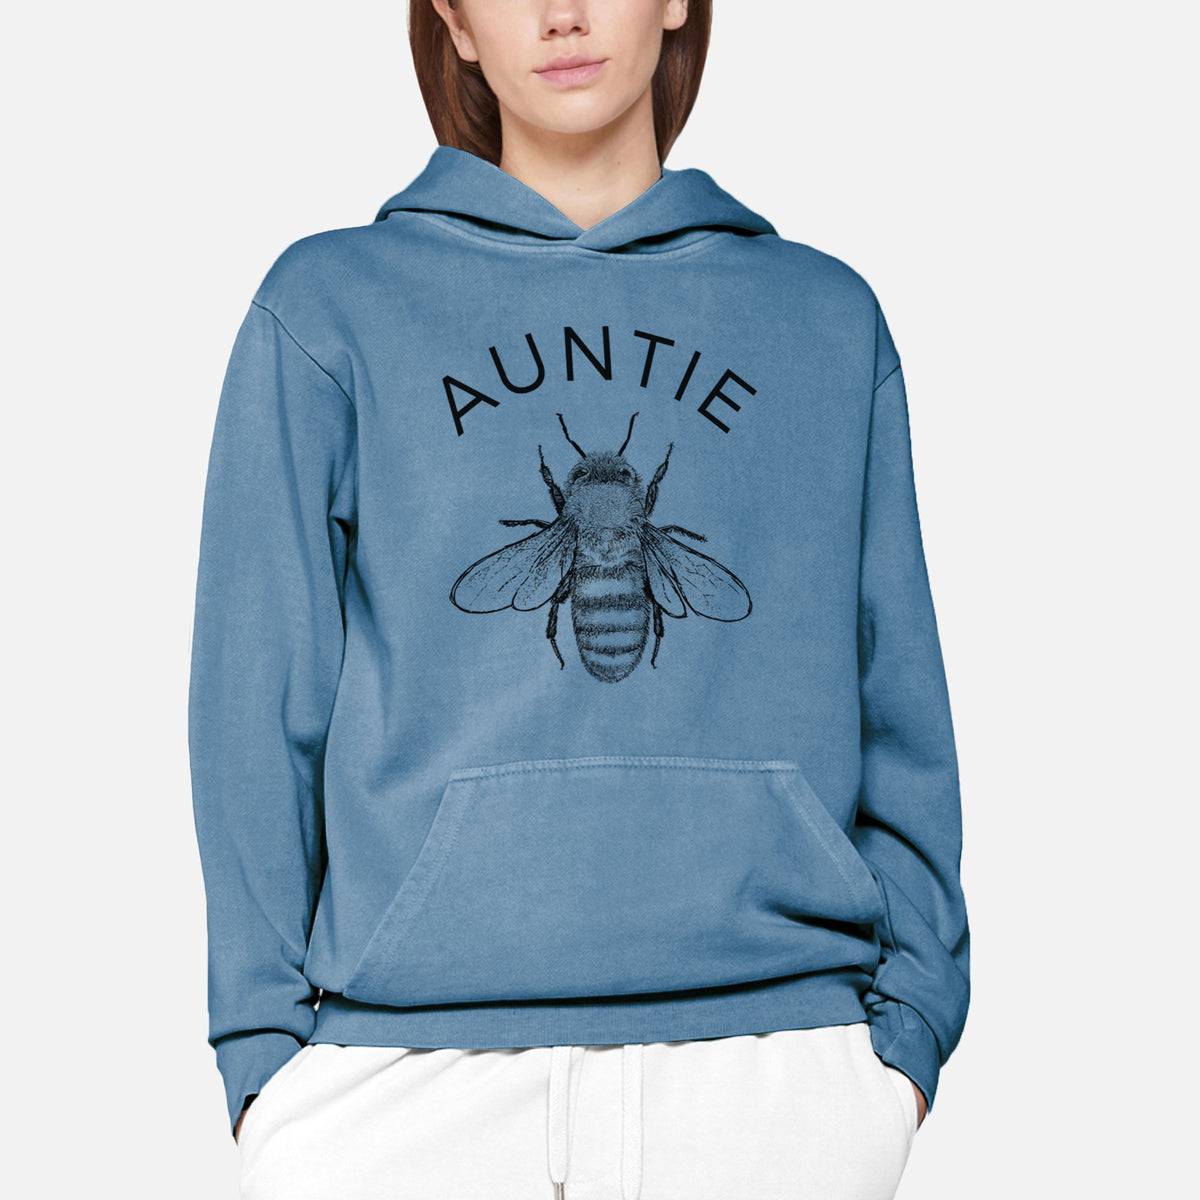 Auntie Bee  - Urban Heavyweight Hoodie